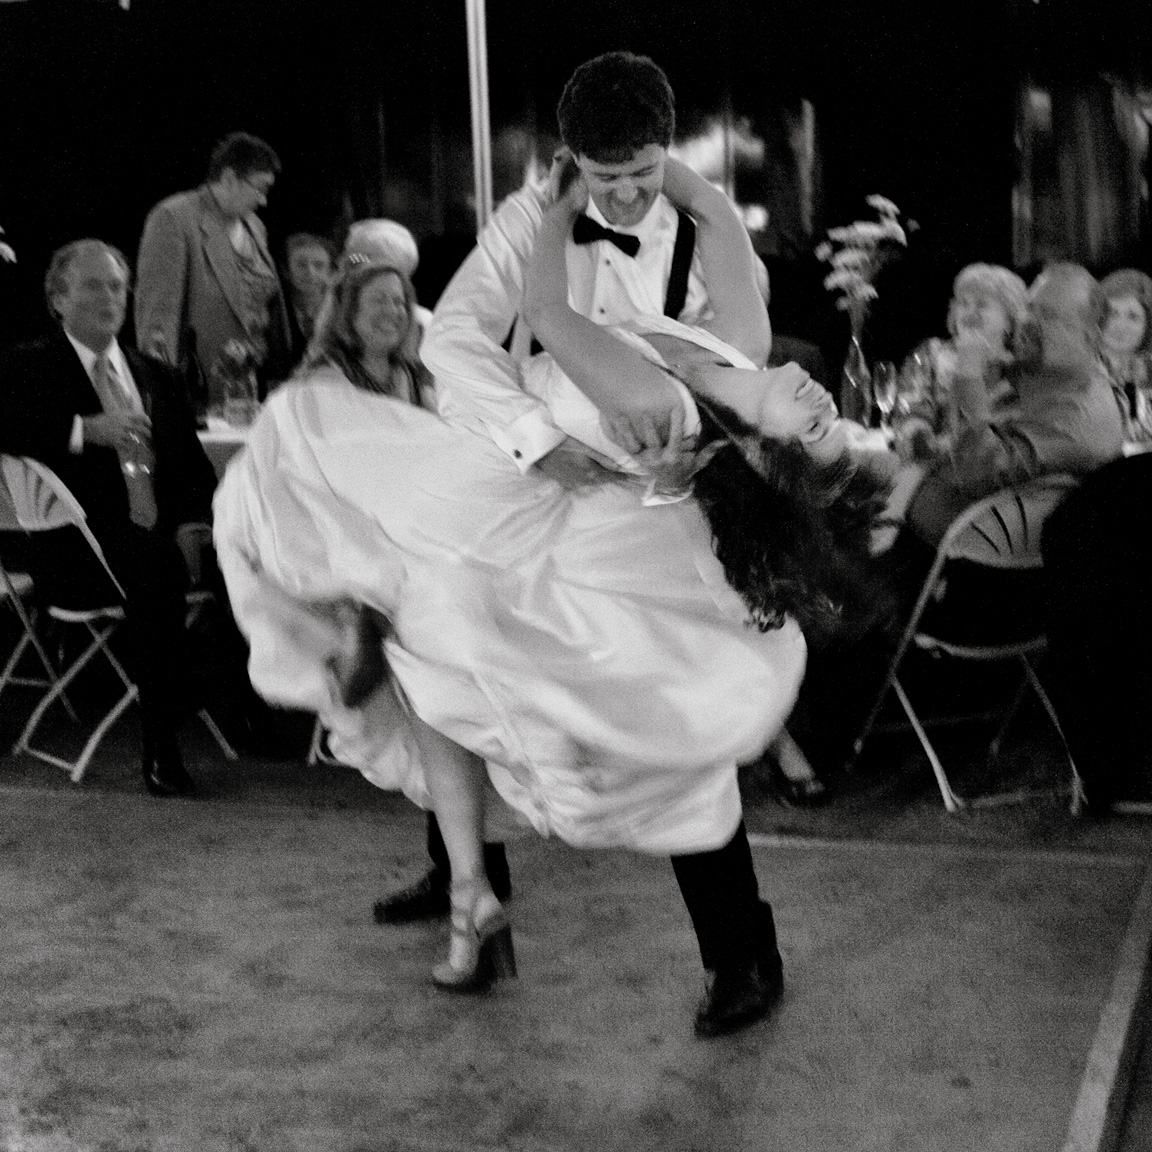 0321-cake-dance-072812-wedding-2246.jpg